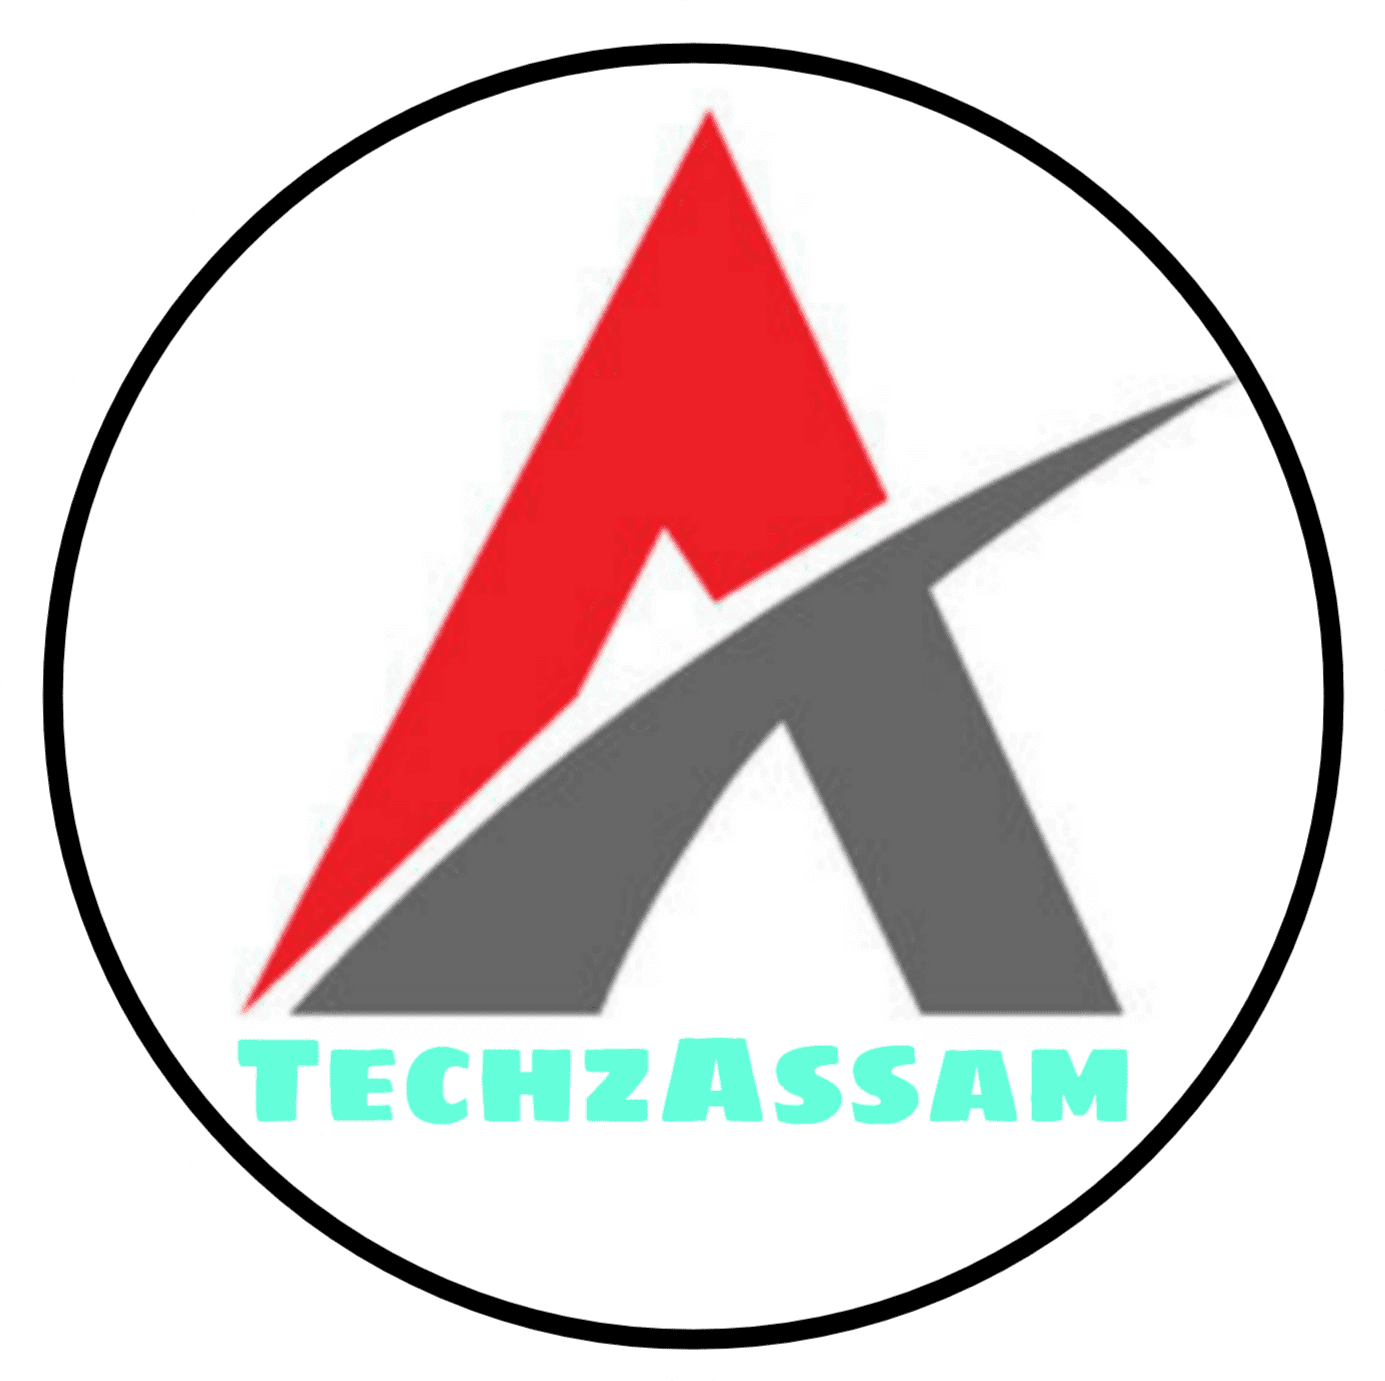 Techz Assam